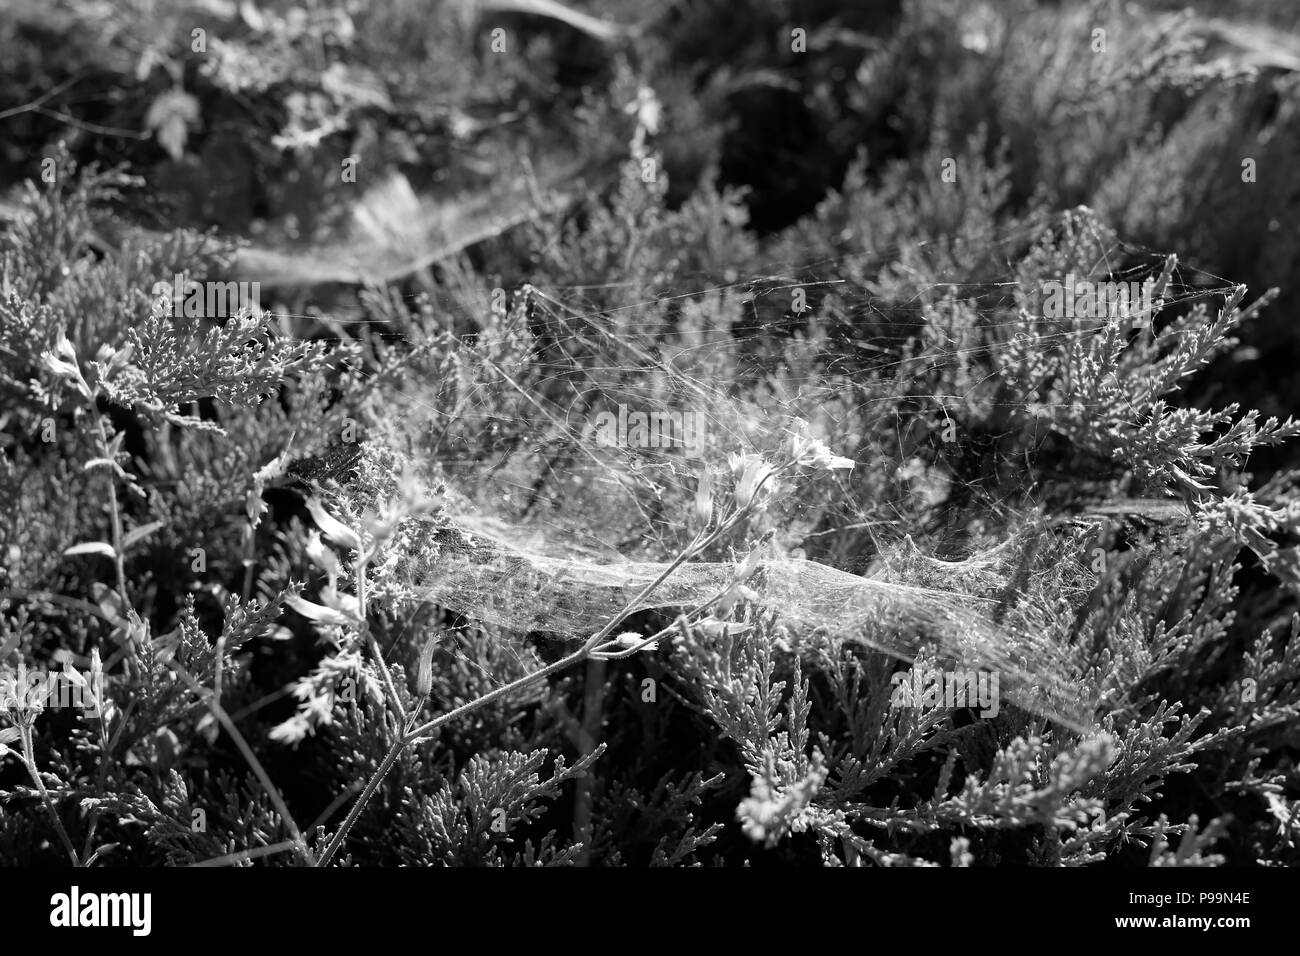 Nahaufnahme der Spinnennetz auf Pflanzen im Sommer in Schwarz und Weiß Stockfoto